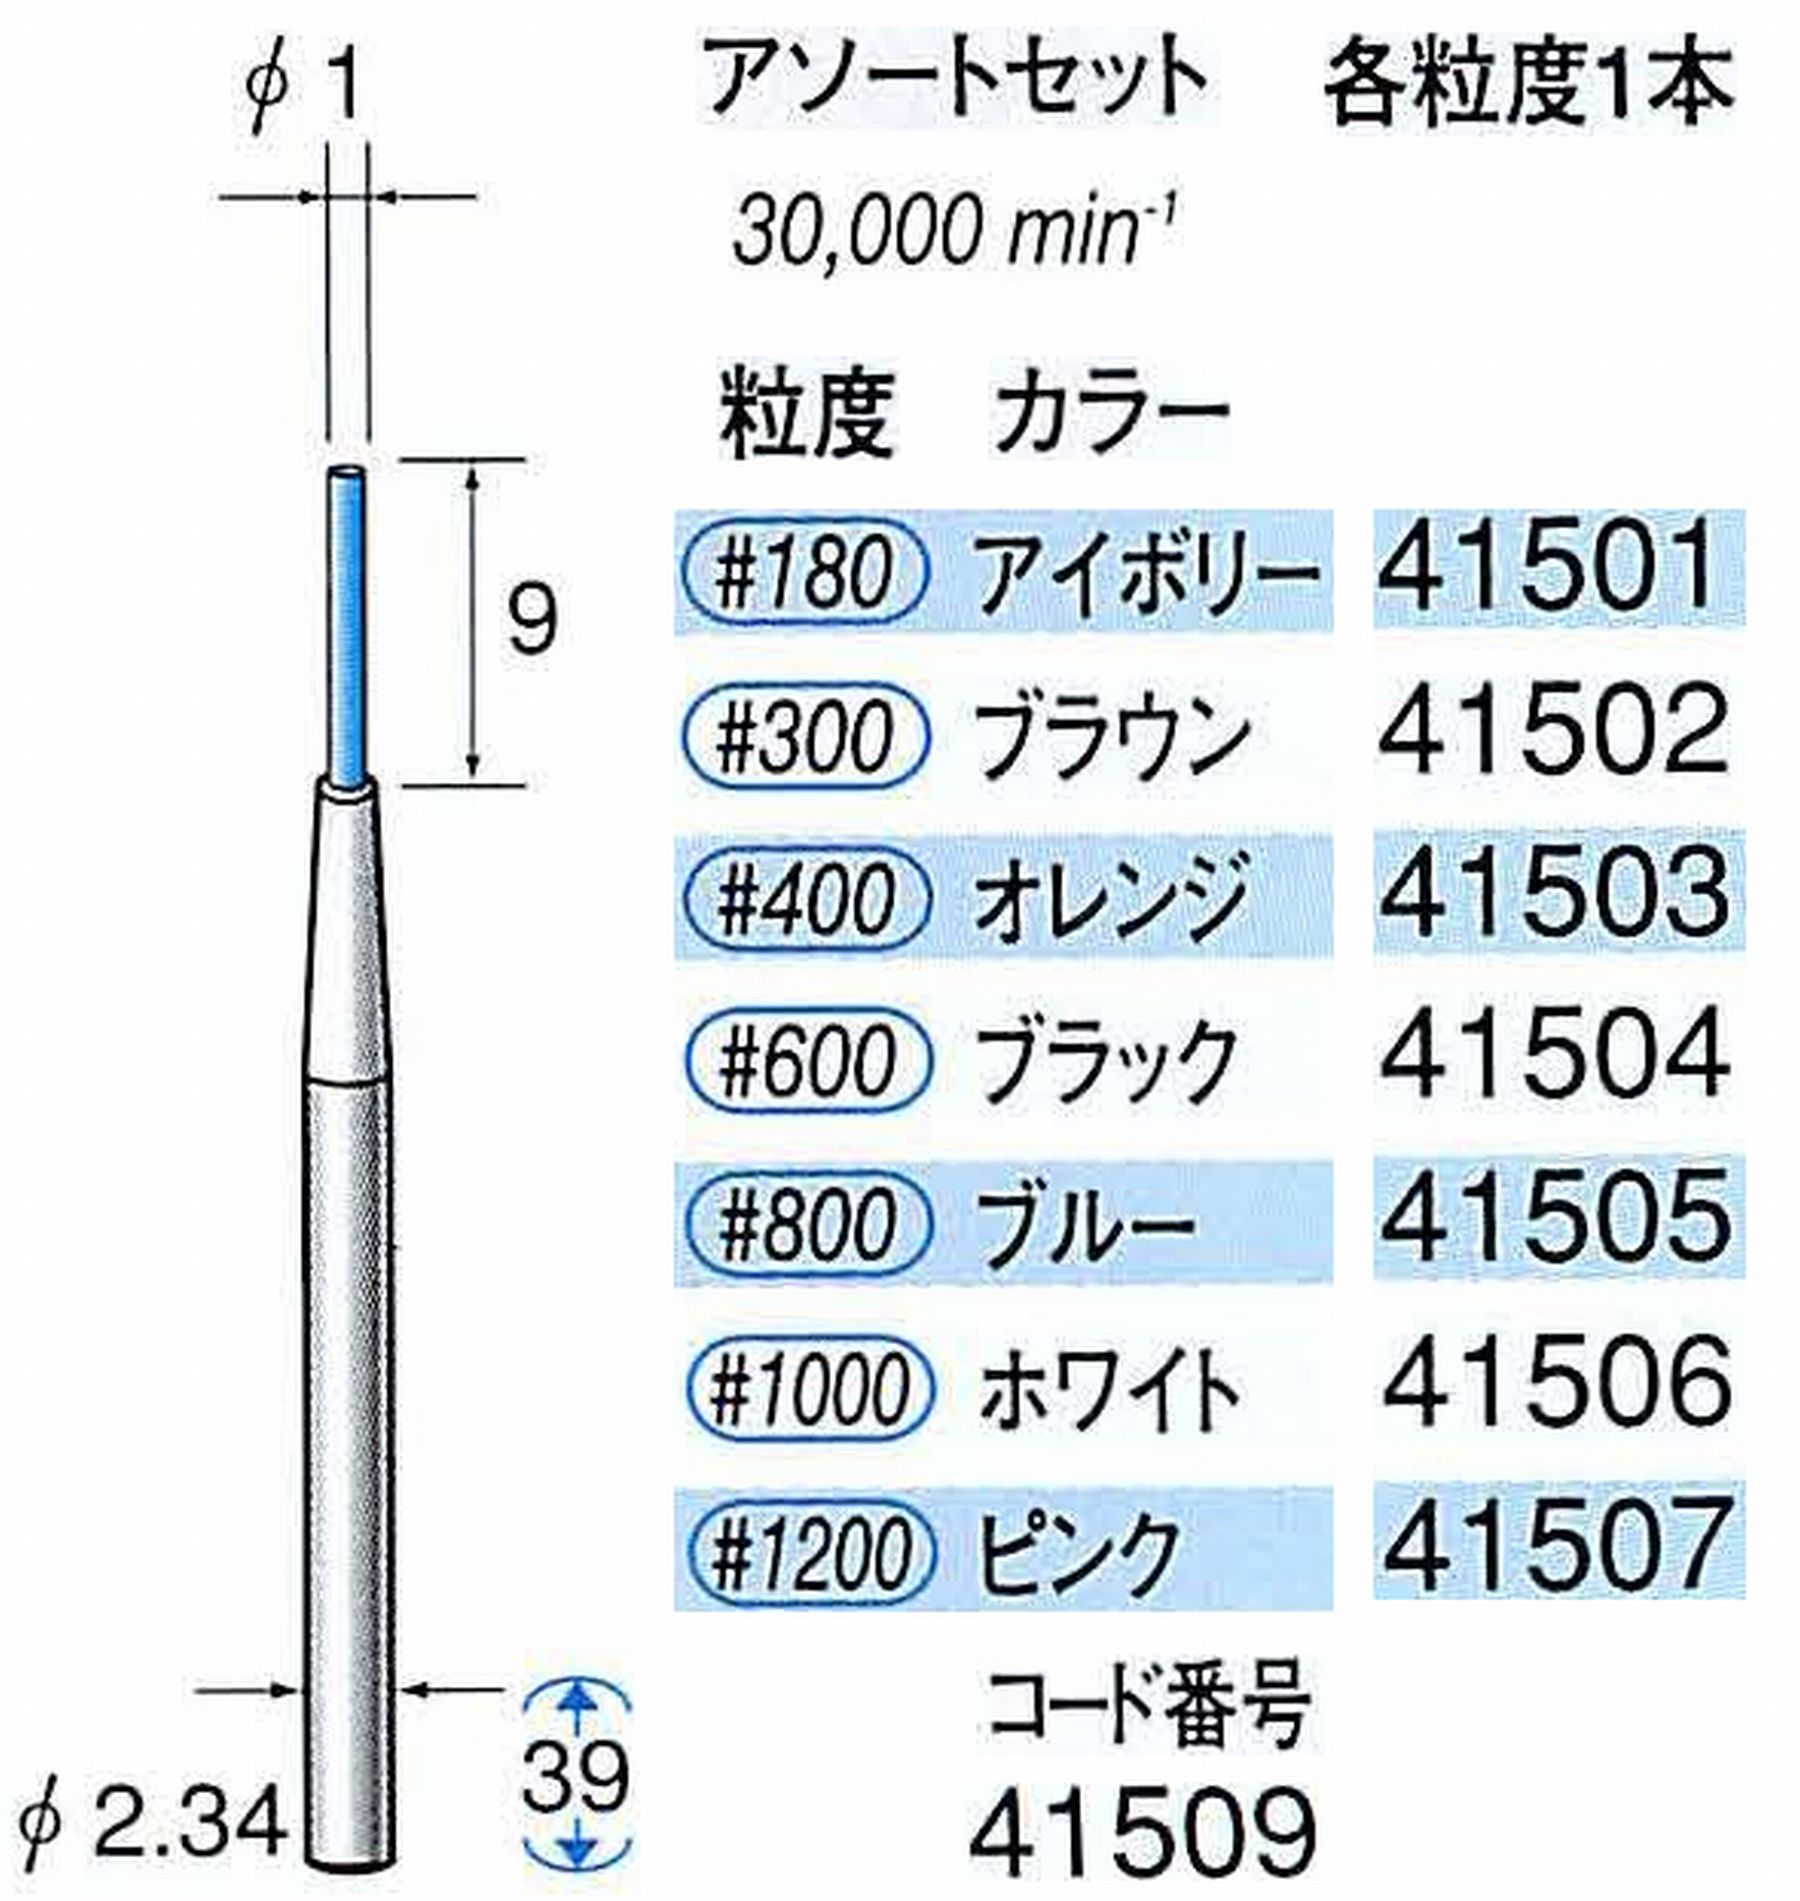 ナカニシ/NAKANISHI セラファイバー精密軸付砥石 アソートセット(各粒度1本) 軸径(シャンク) φ2.34mm 41509